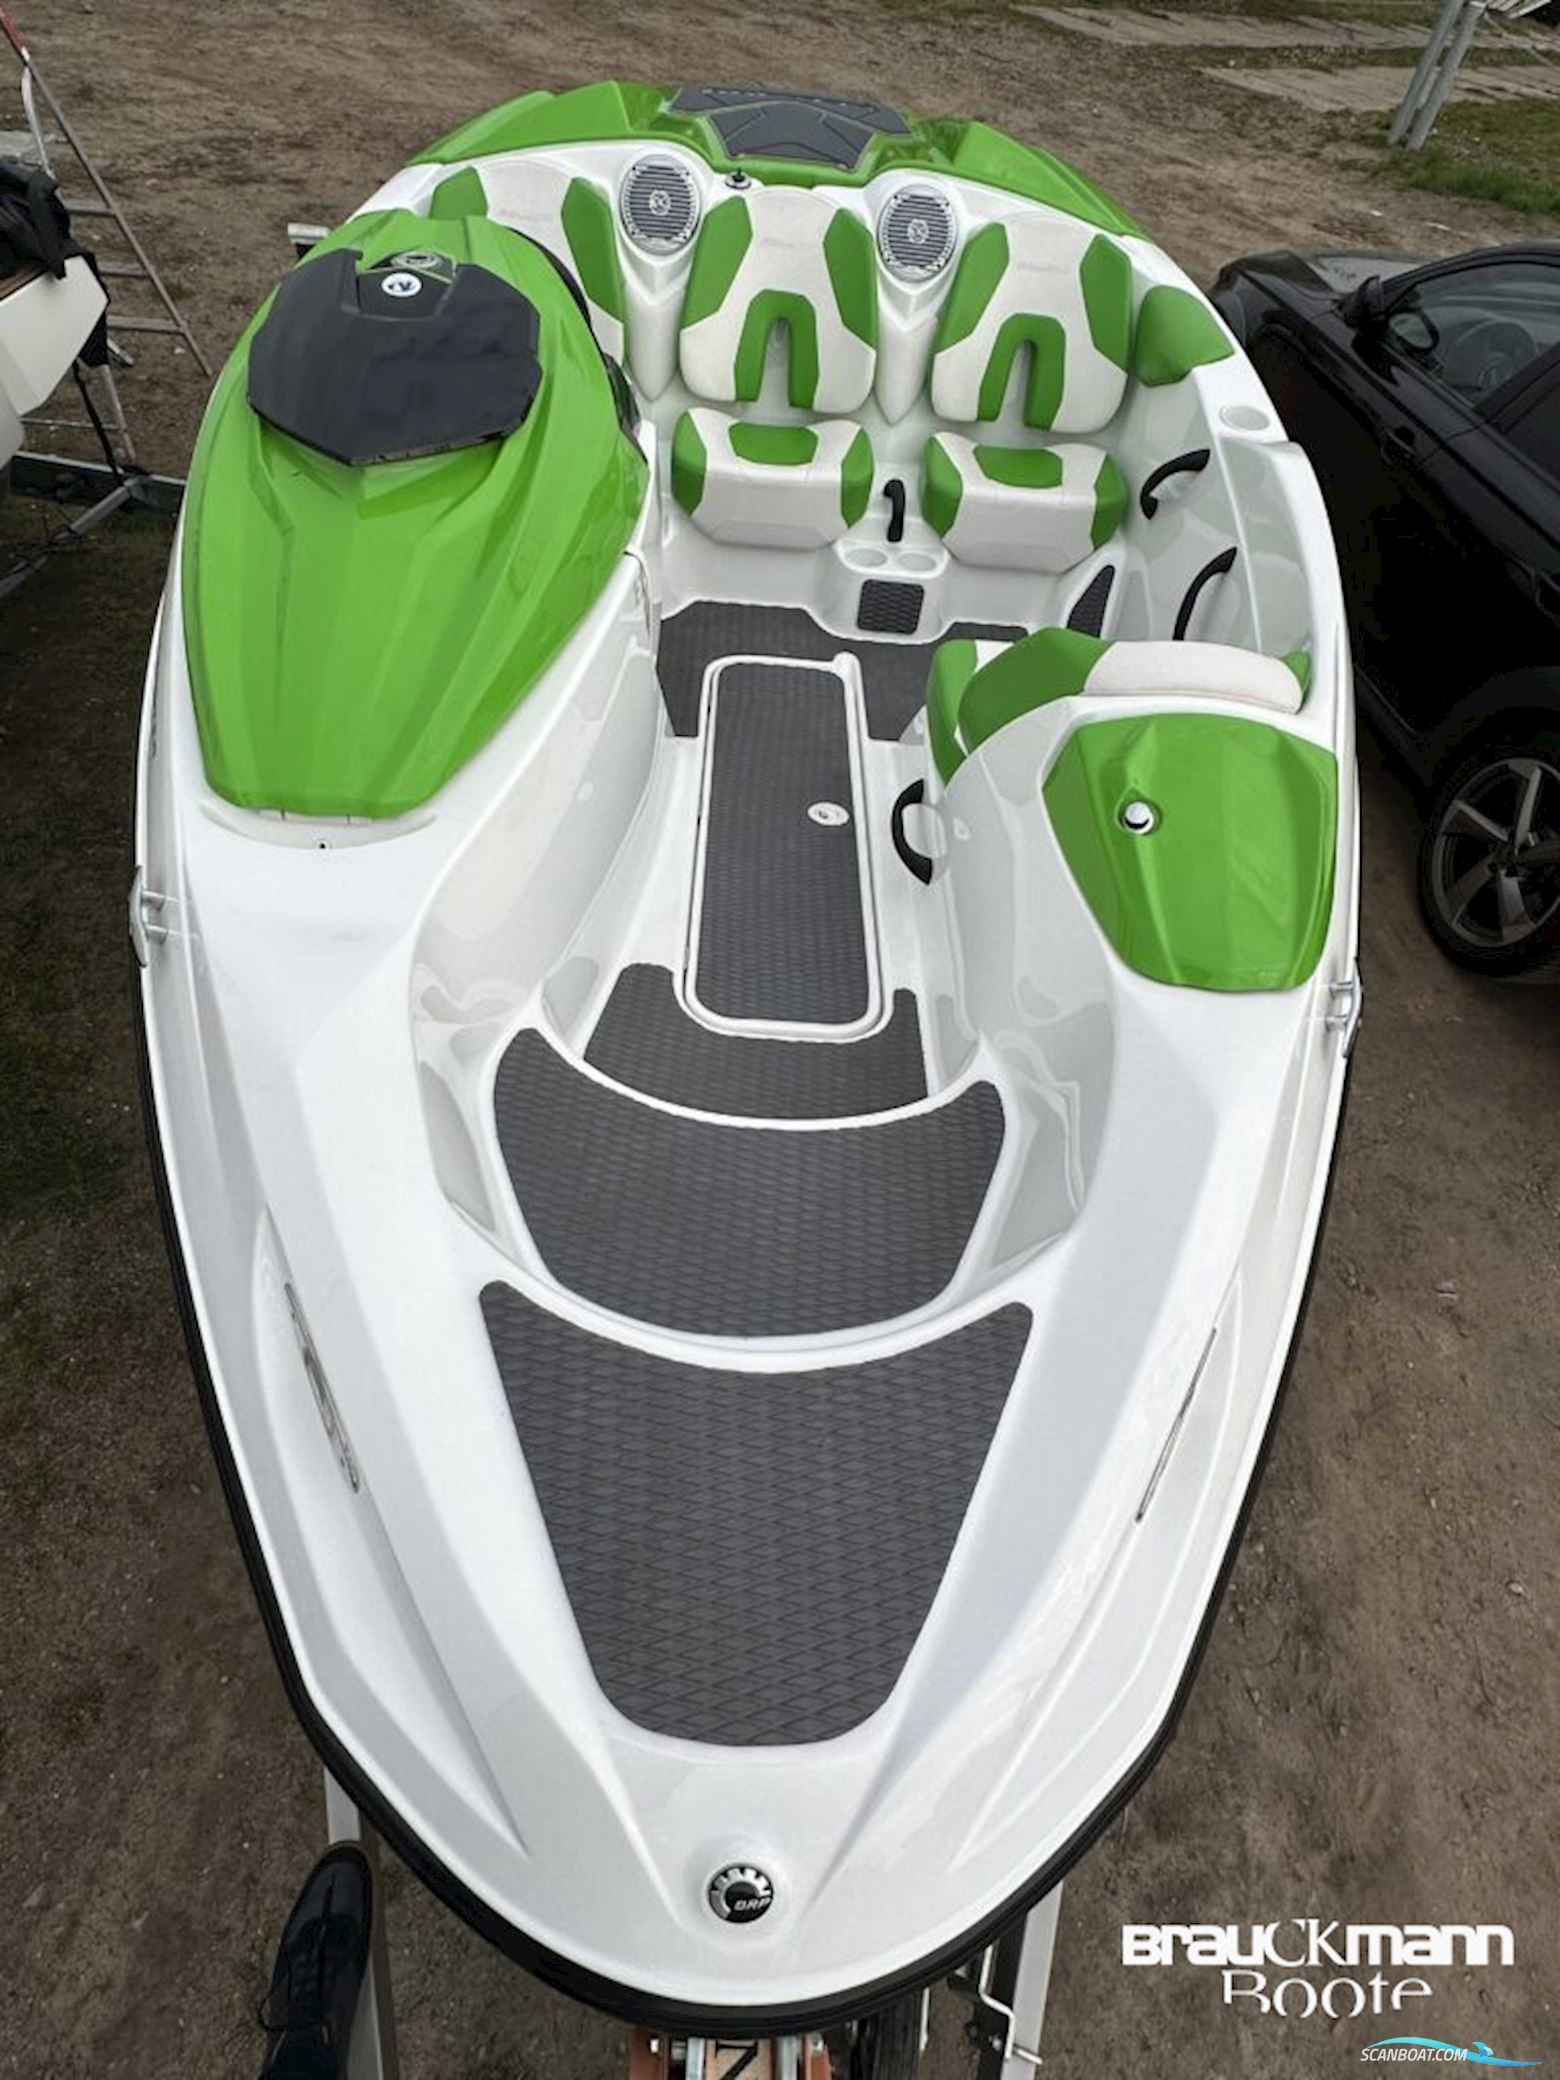 Sea Doo 150 Speedster Motorbåt 2012, med Rotax motor, Tyskland